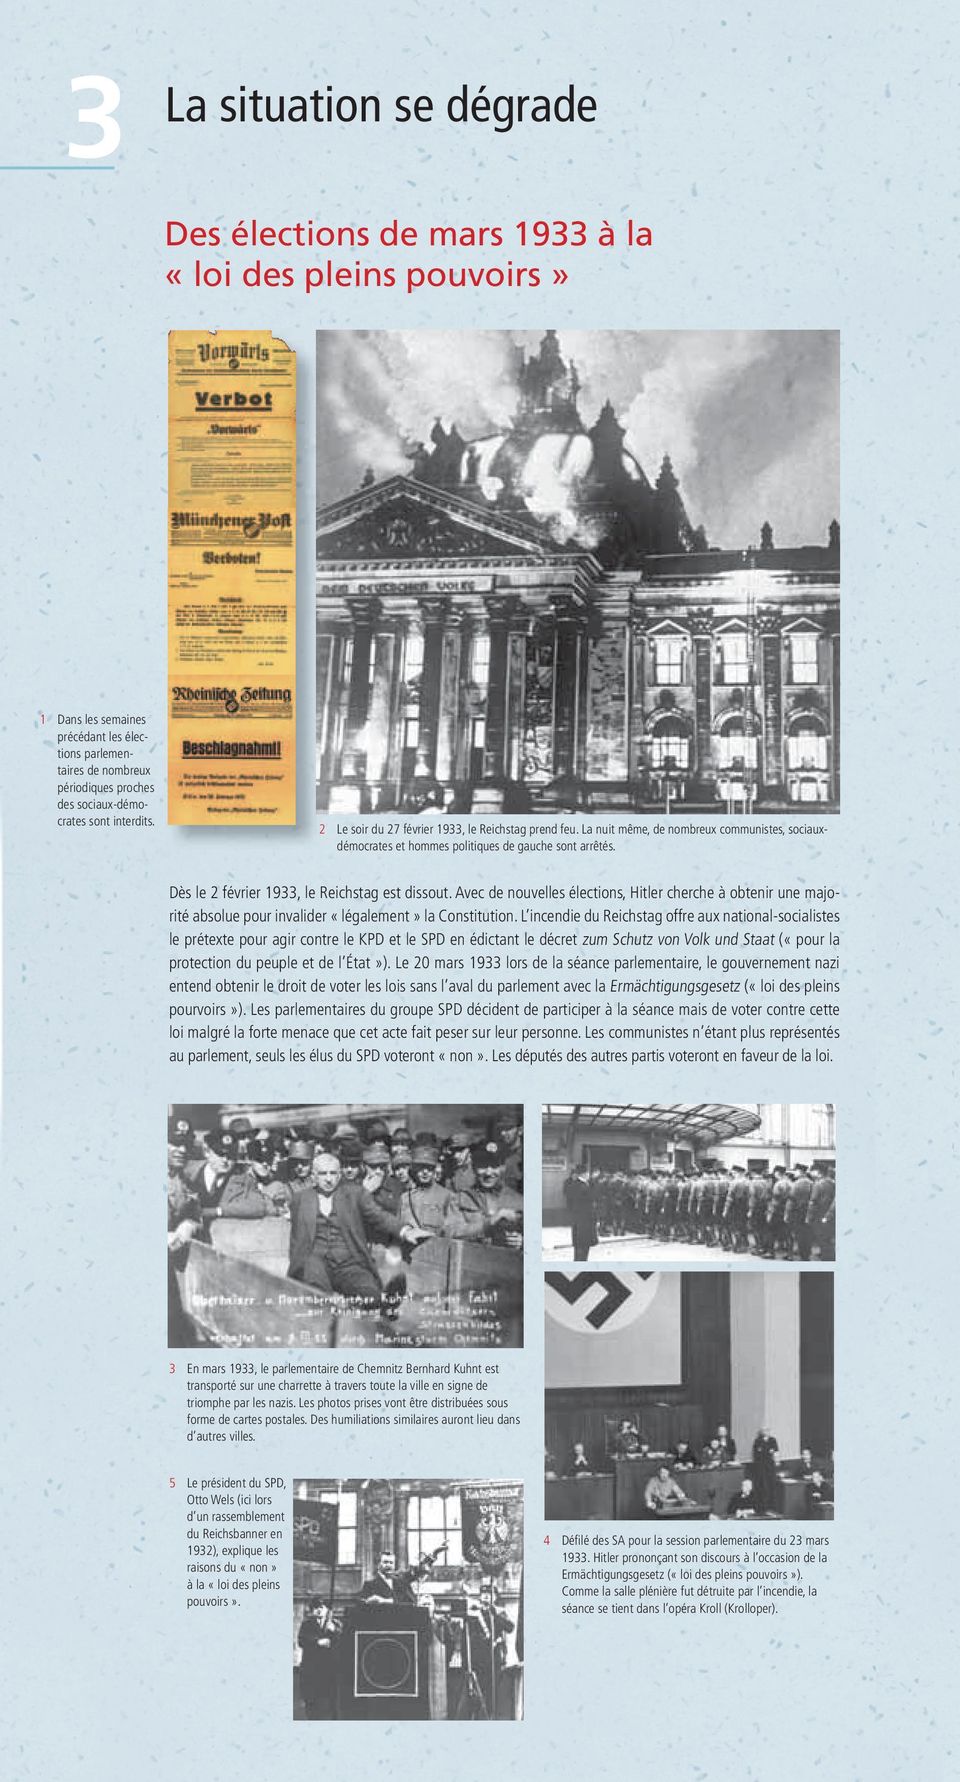 Dès le 2 février 1933, le Reichstag est dissout. Avec de nouvelles élections, Hitler cherche à obtenir une majorité absolue pour invalider «légalement» la Constitution.